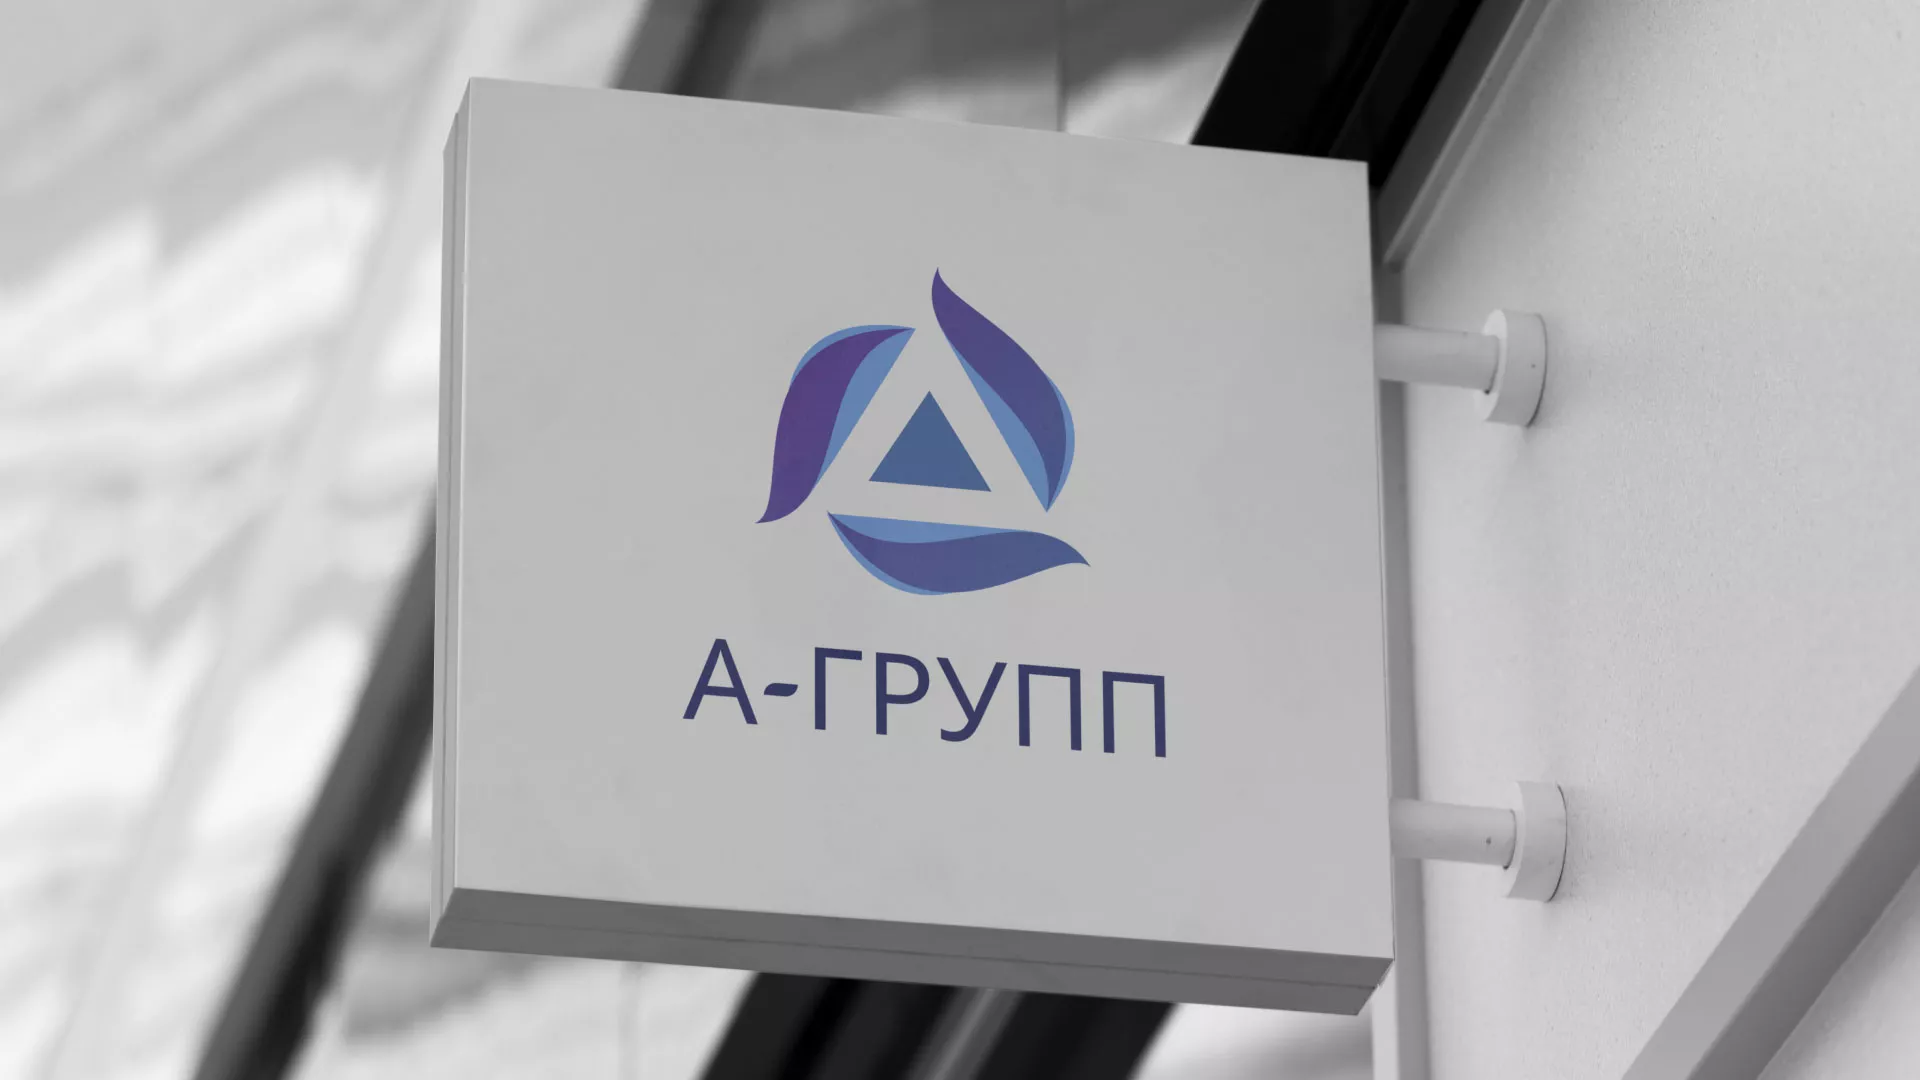 Создание логотипа компании «А-ГРУПП» в Заполярном